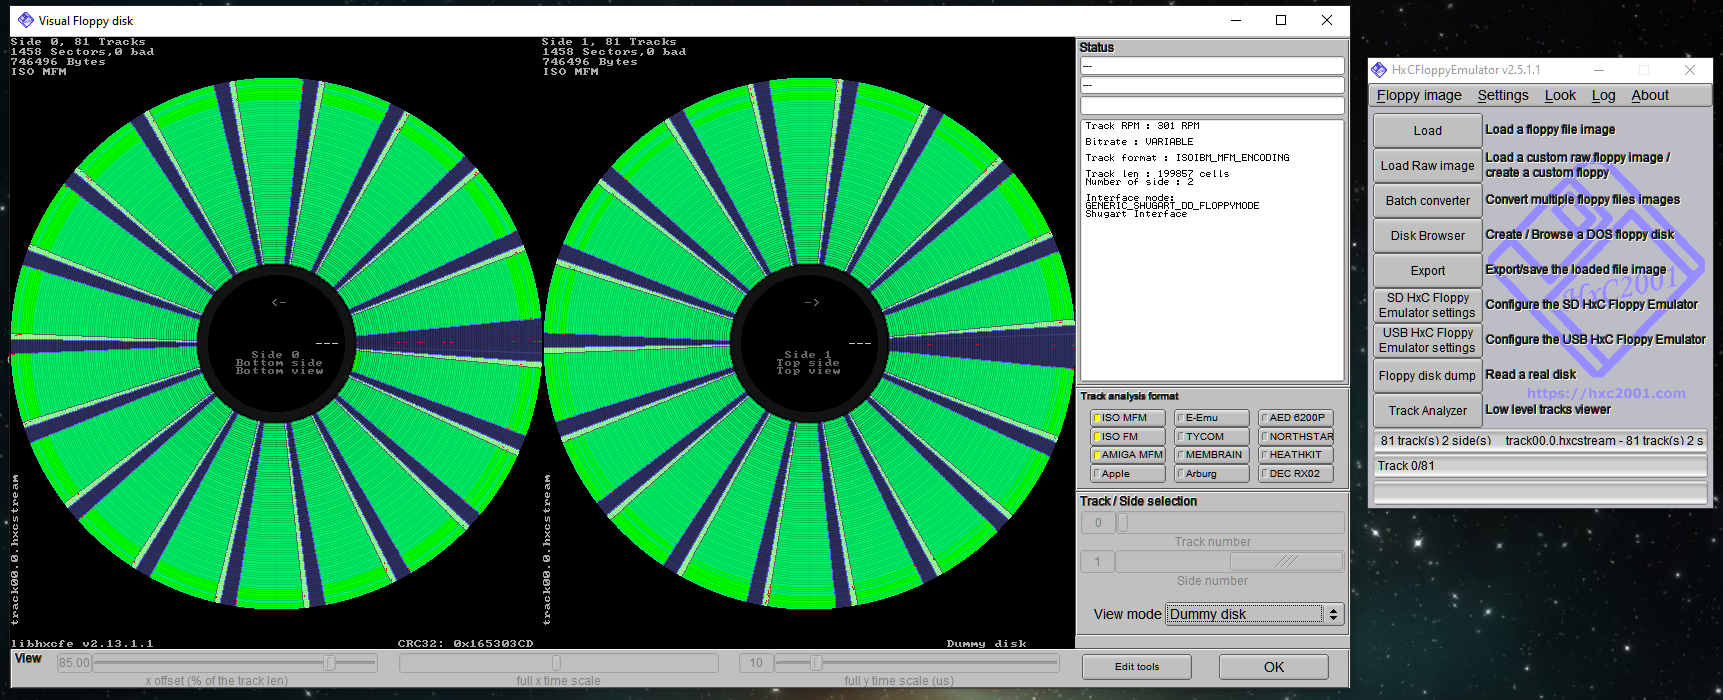 Track analyzer mode dummy disk